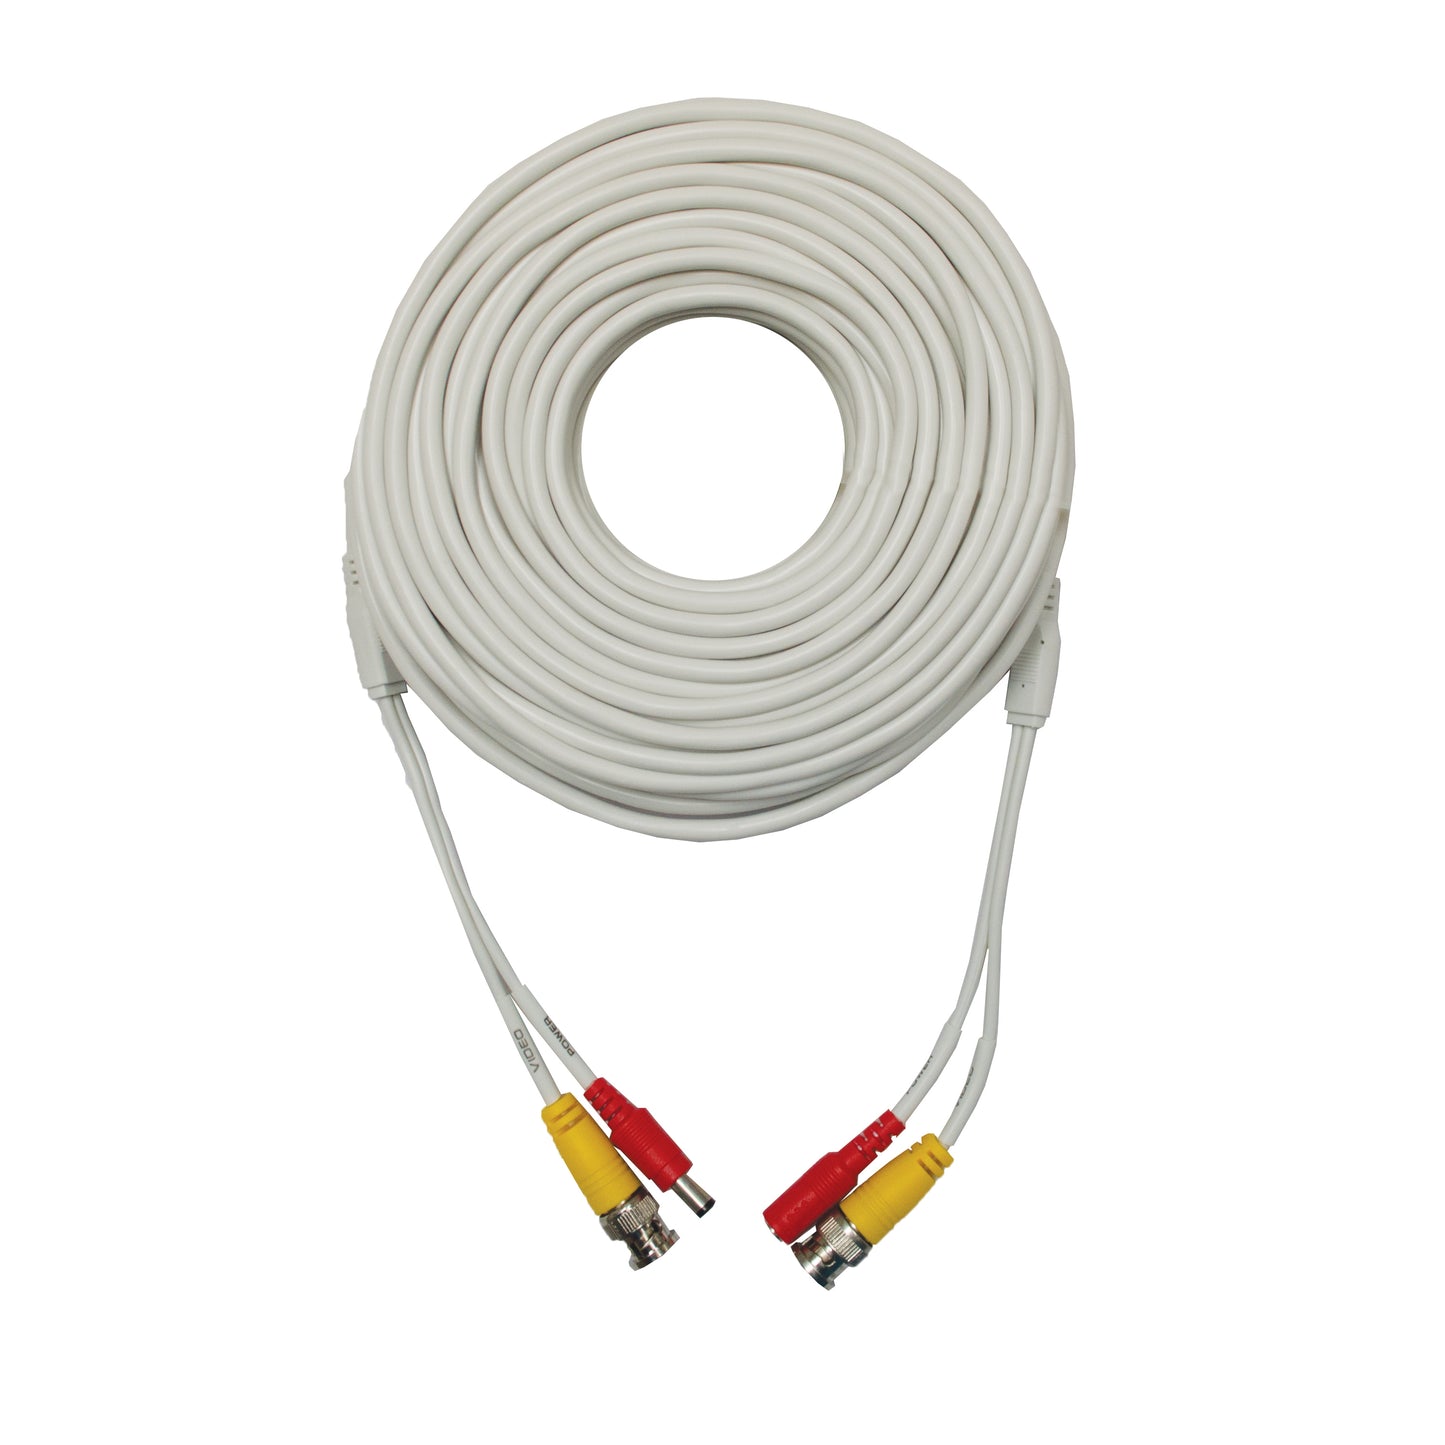 200' Premium Grade BNC Coaxial Cable